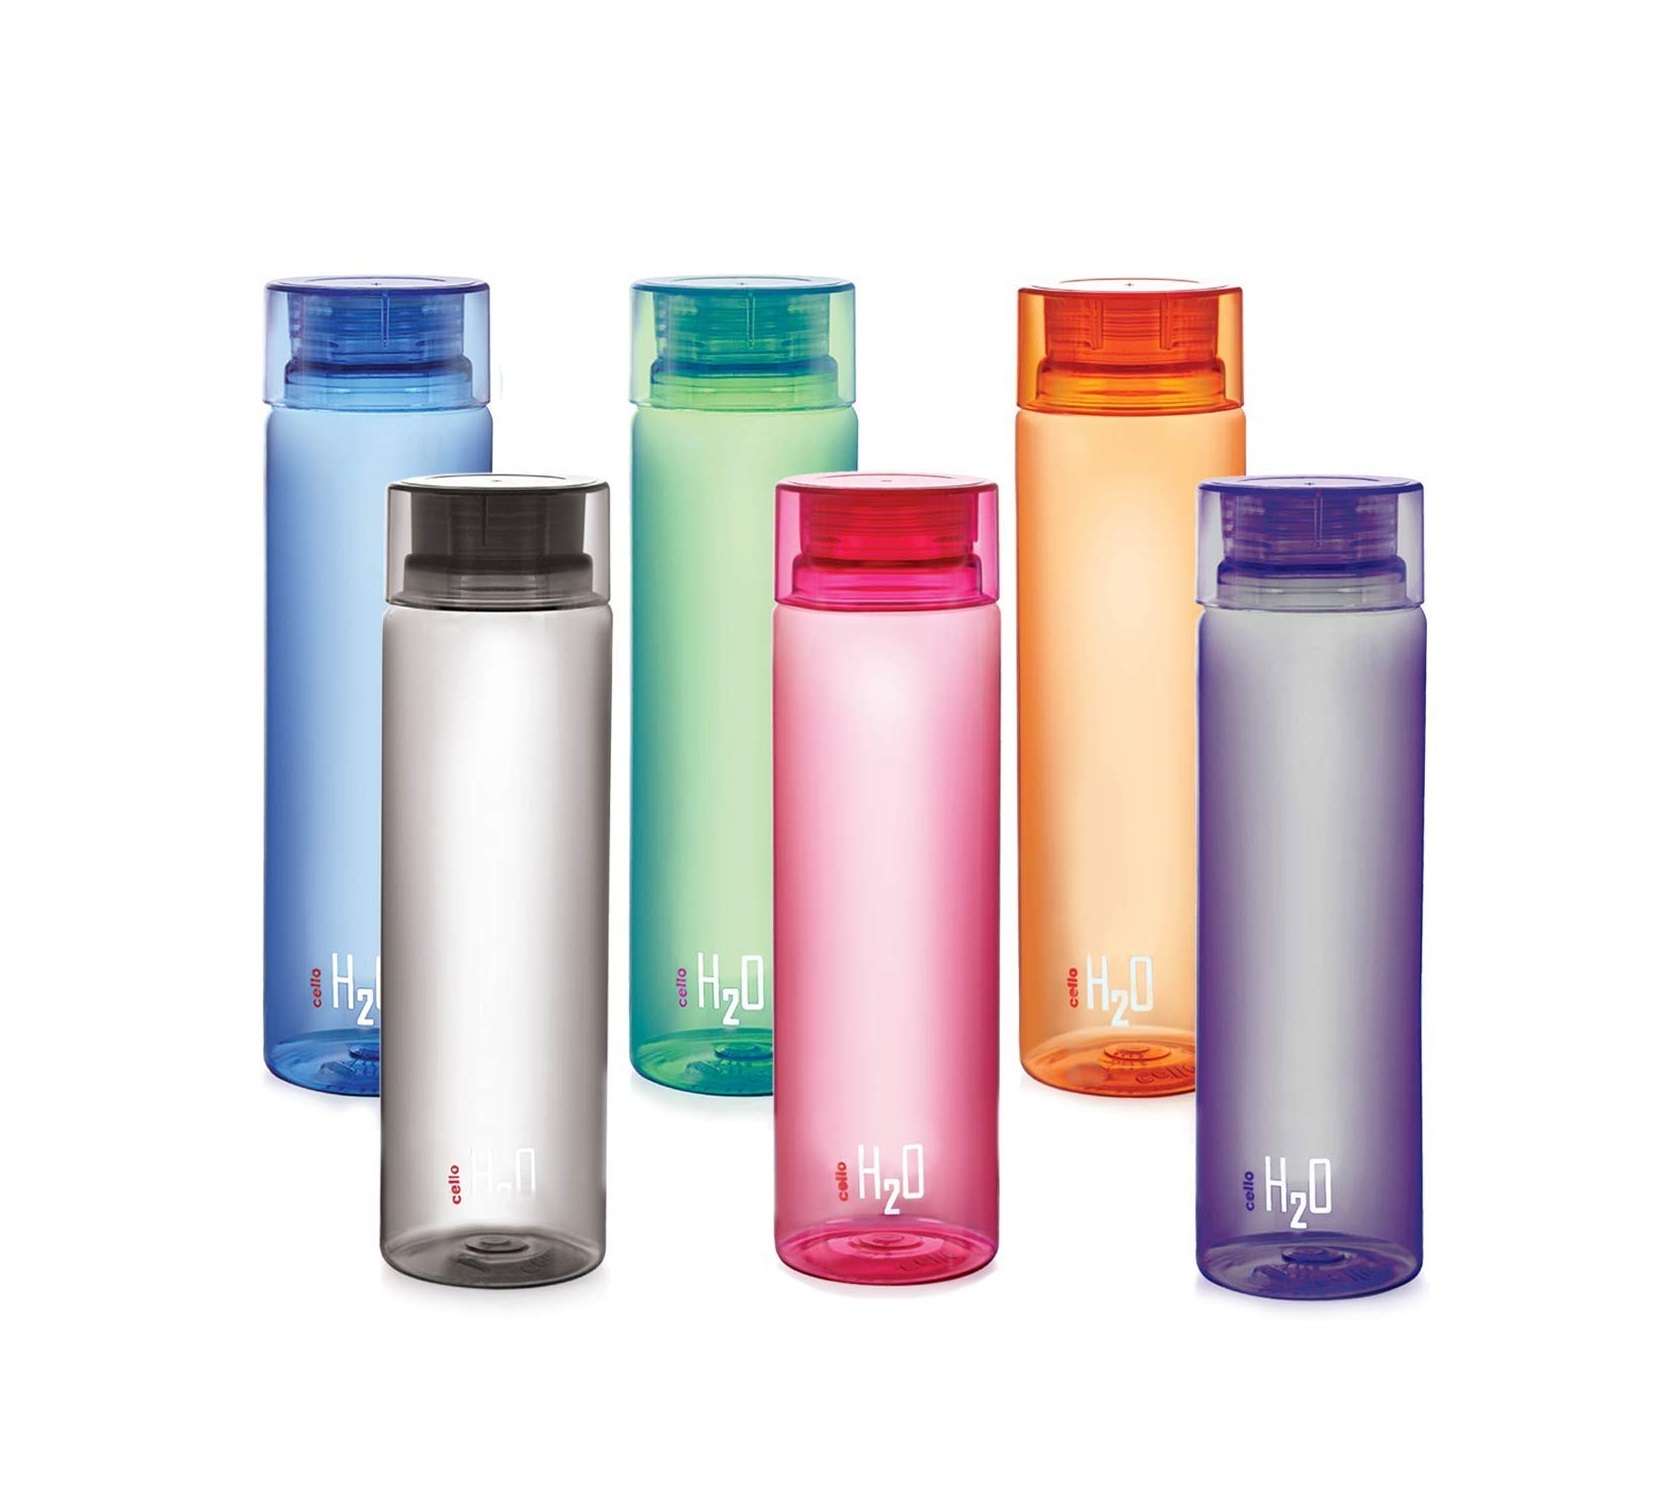 Cello H2O Premium Plastic Water Bottle (Multicolour, 1L)